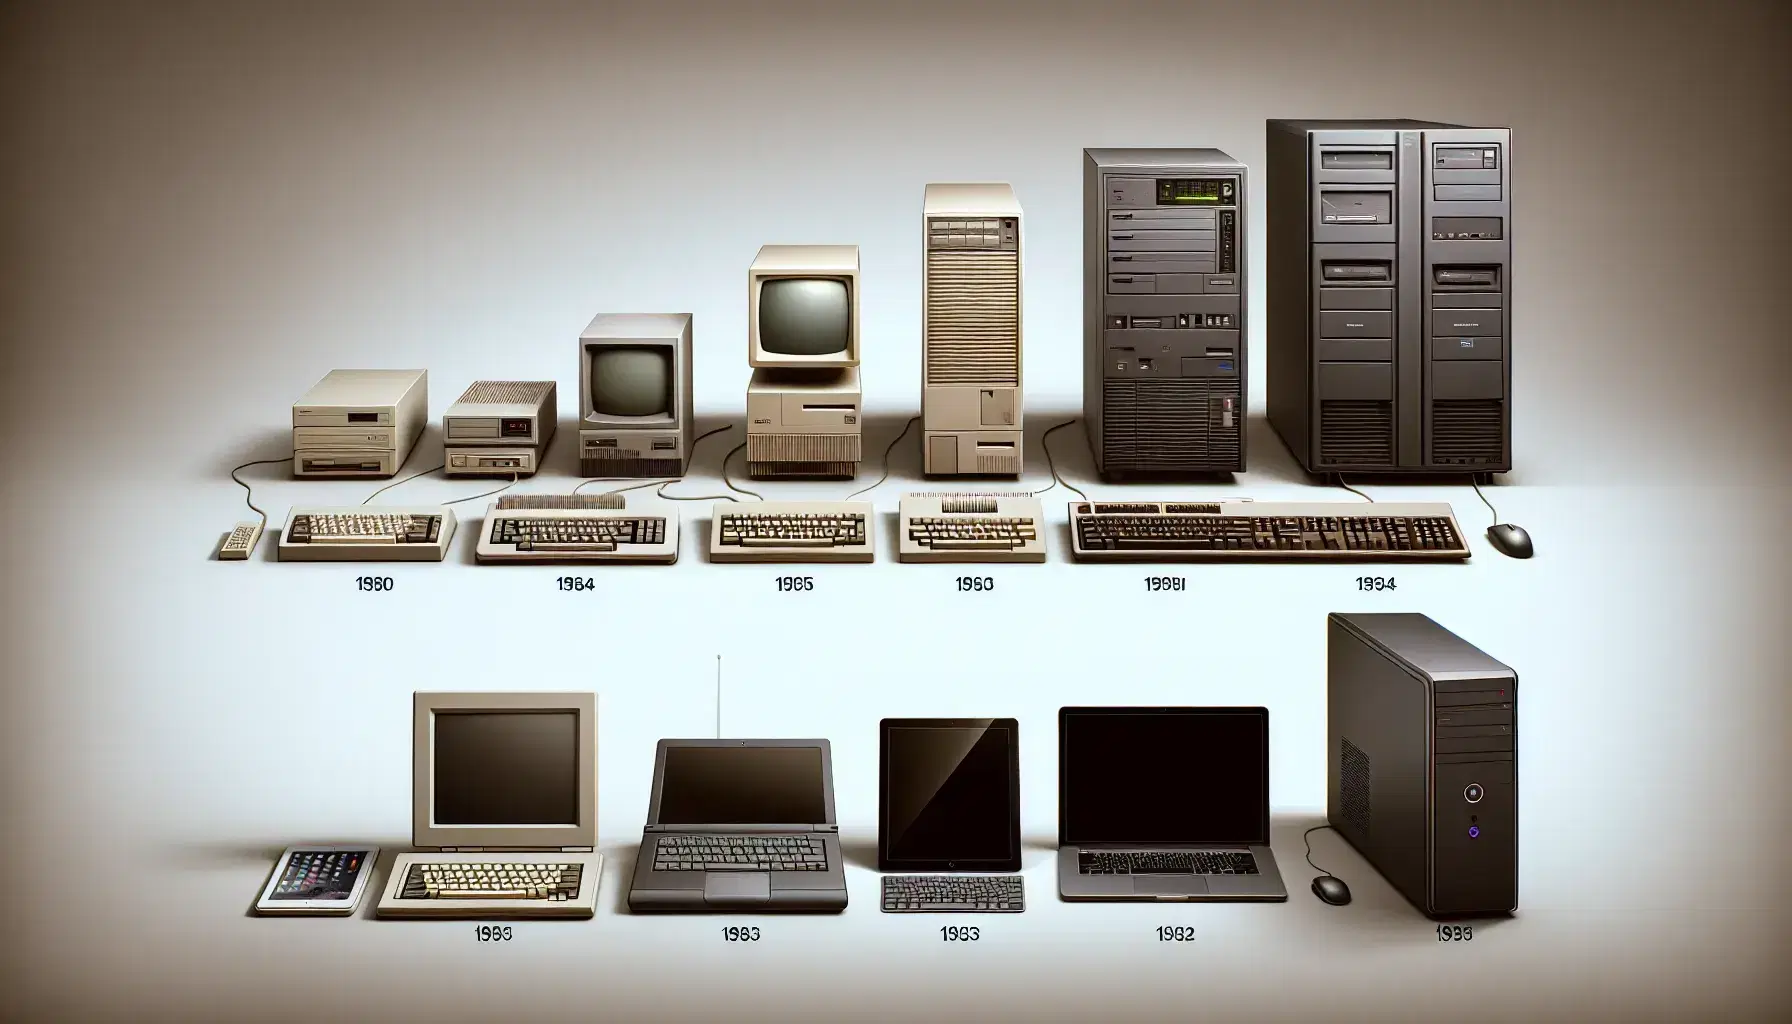 Evolución de la tecnología informática mostrando ordenadores desde un modelo antiguo de mesa hasta un moderno PC de escritorio con monitor delgado y periféricos inalámbricos.